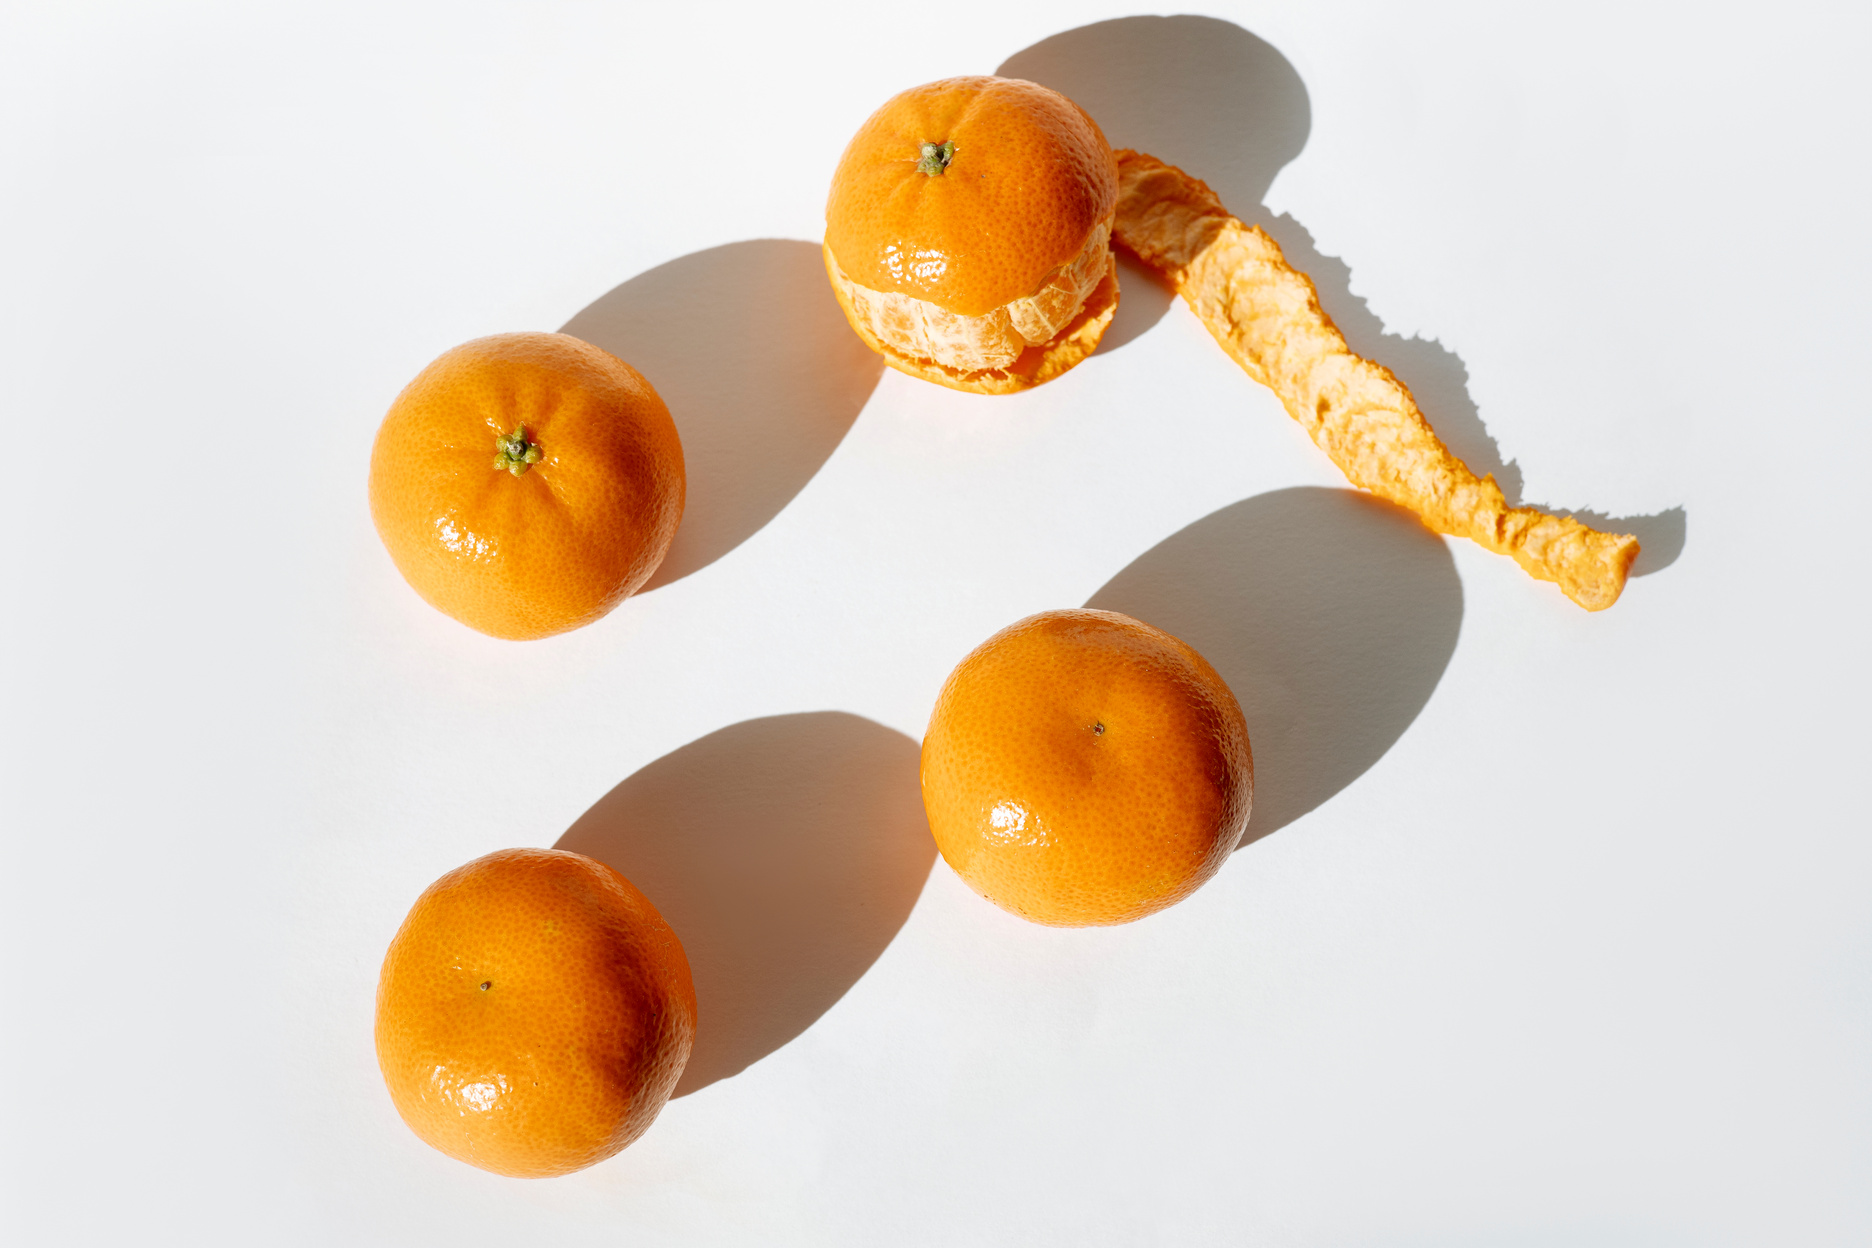 Orange Fruits on White Surface